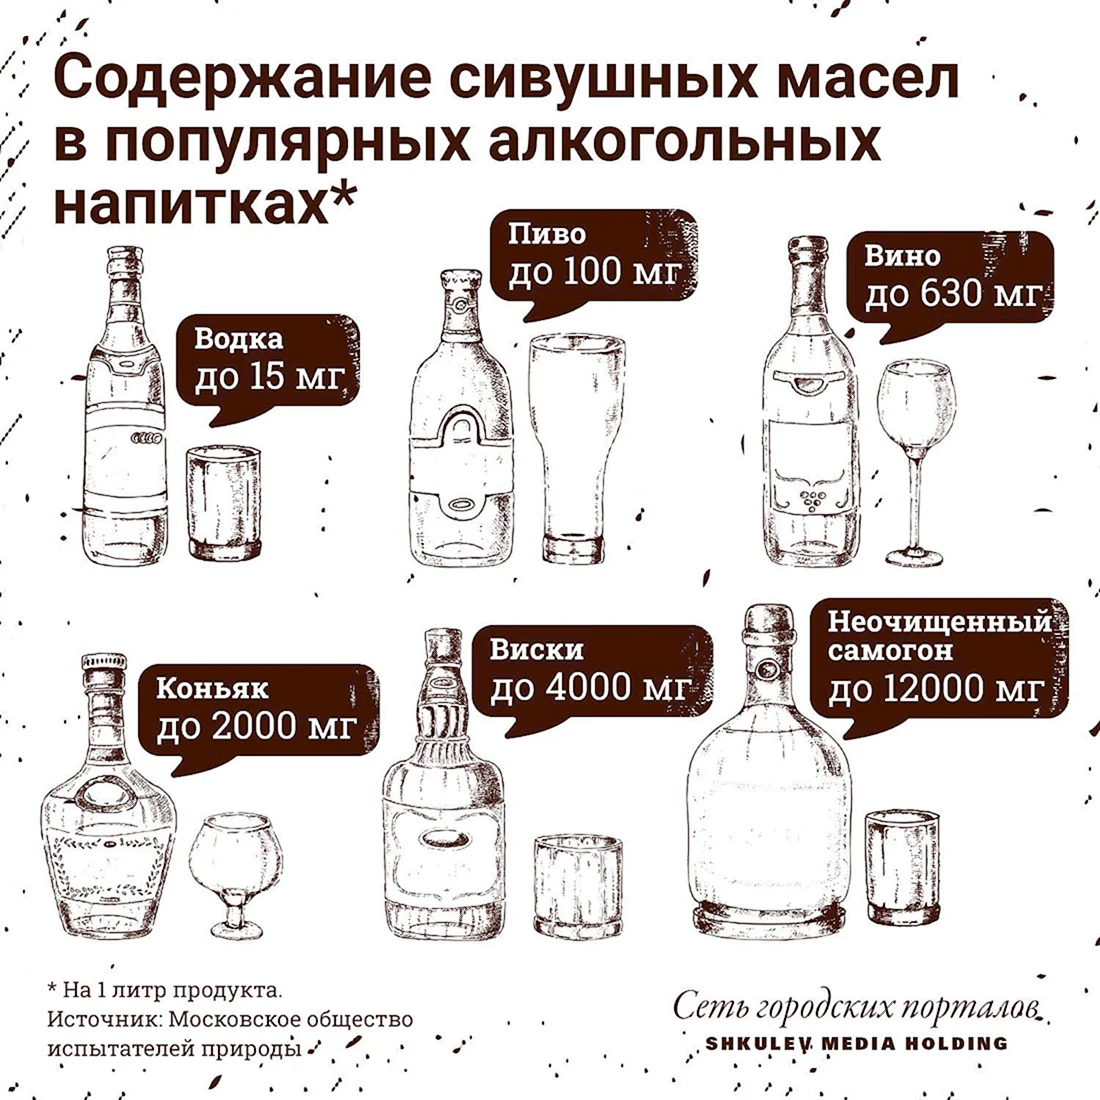 Таблица сивушных масел в спиртных напитках